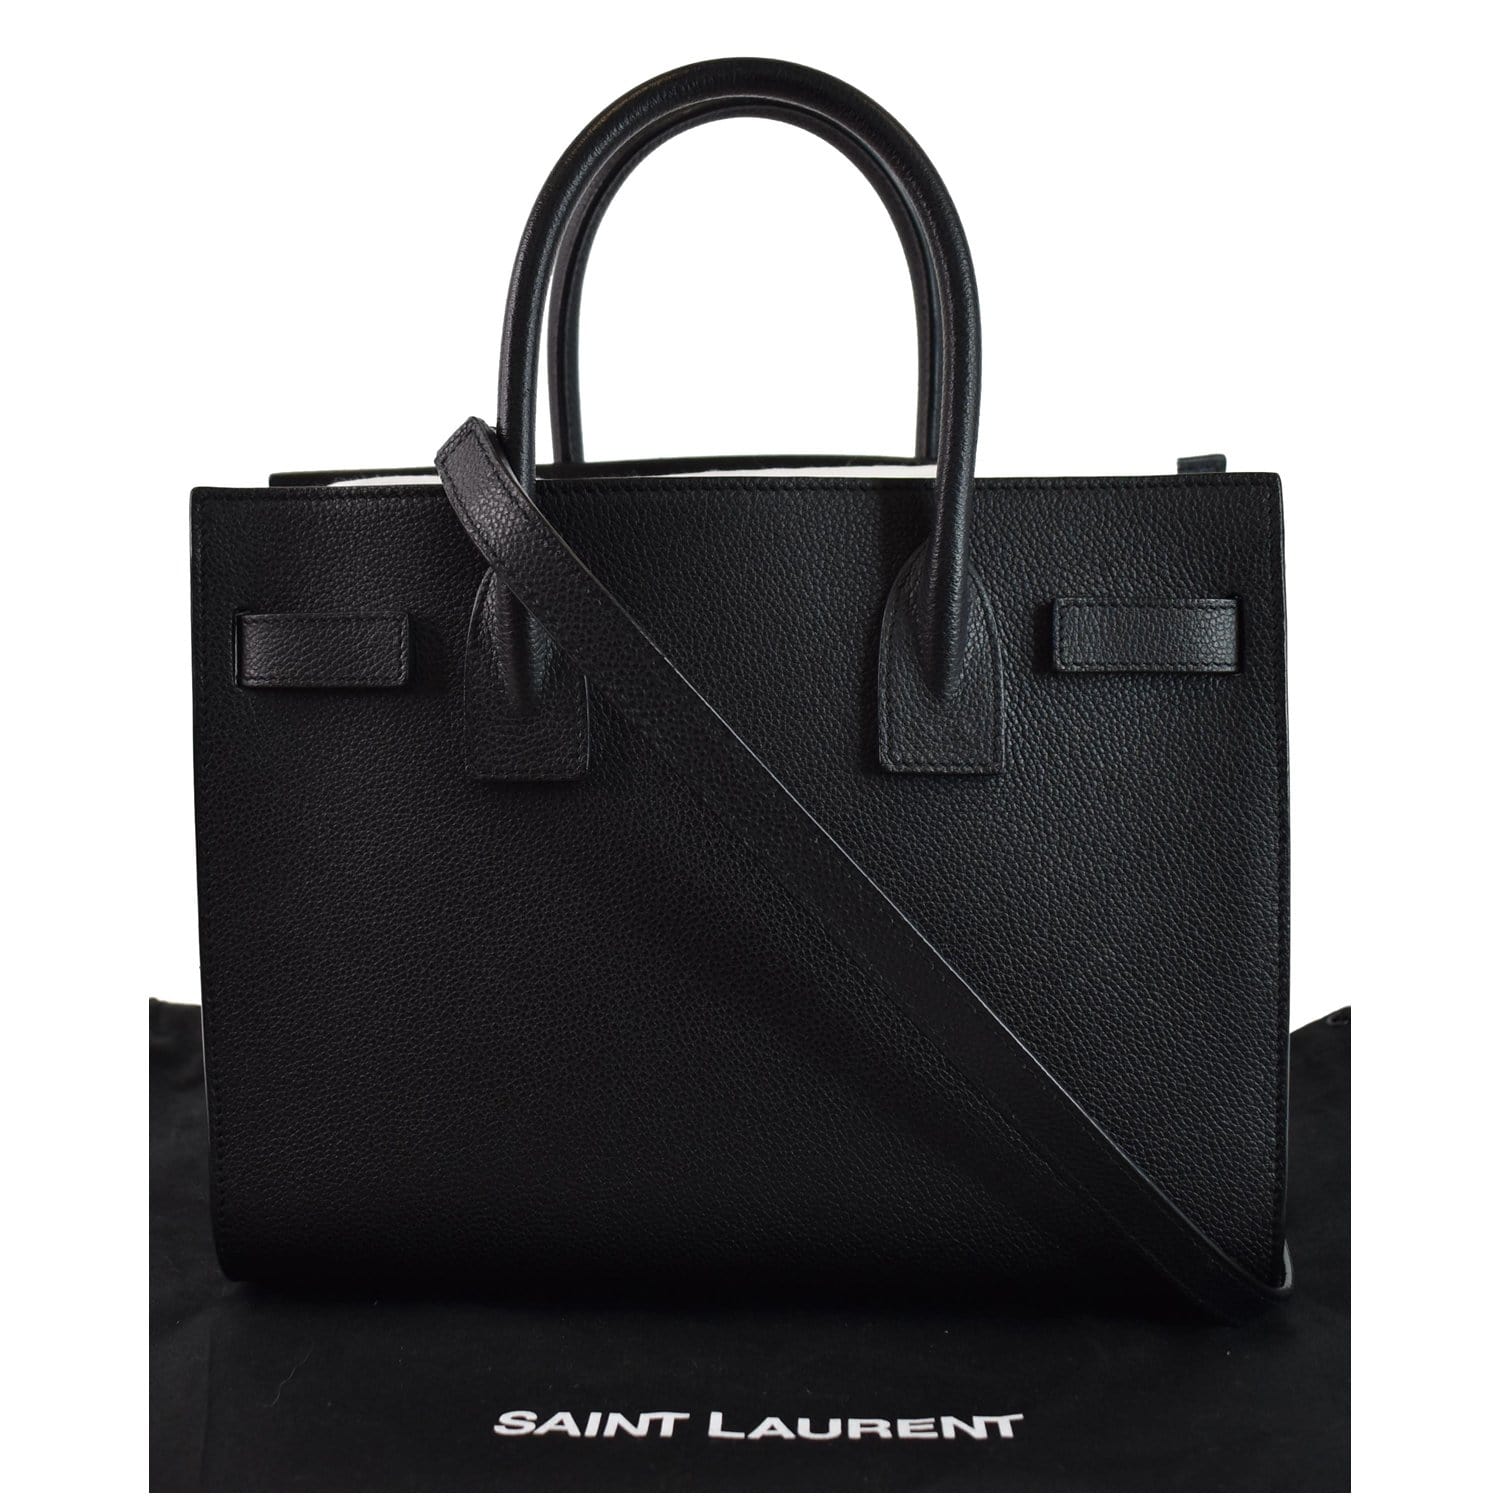 Review: Saint Laurent Sac De Jour Leather Tote - Elle Blogs